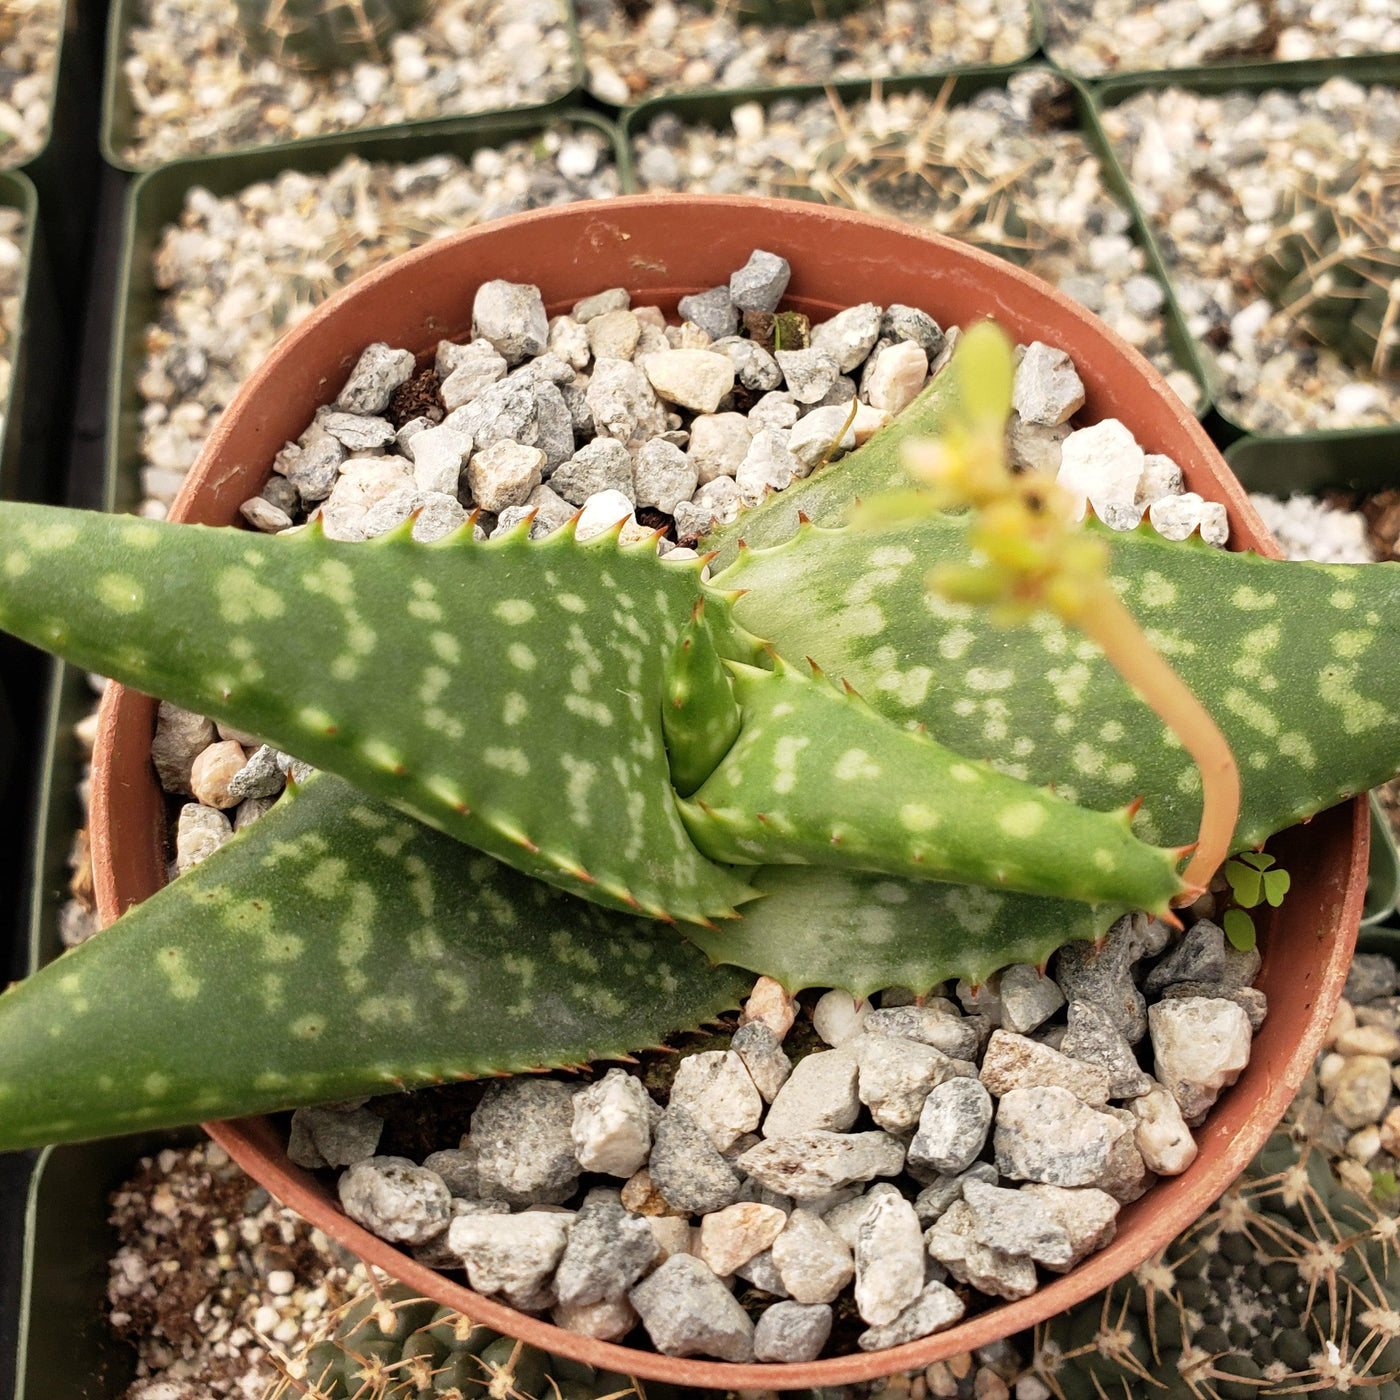 Aloe greatheadii davyana